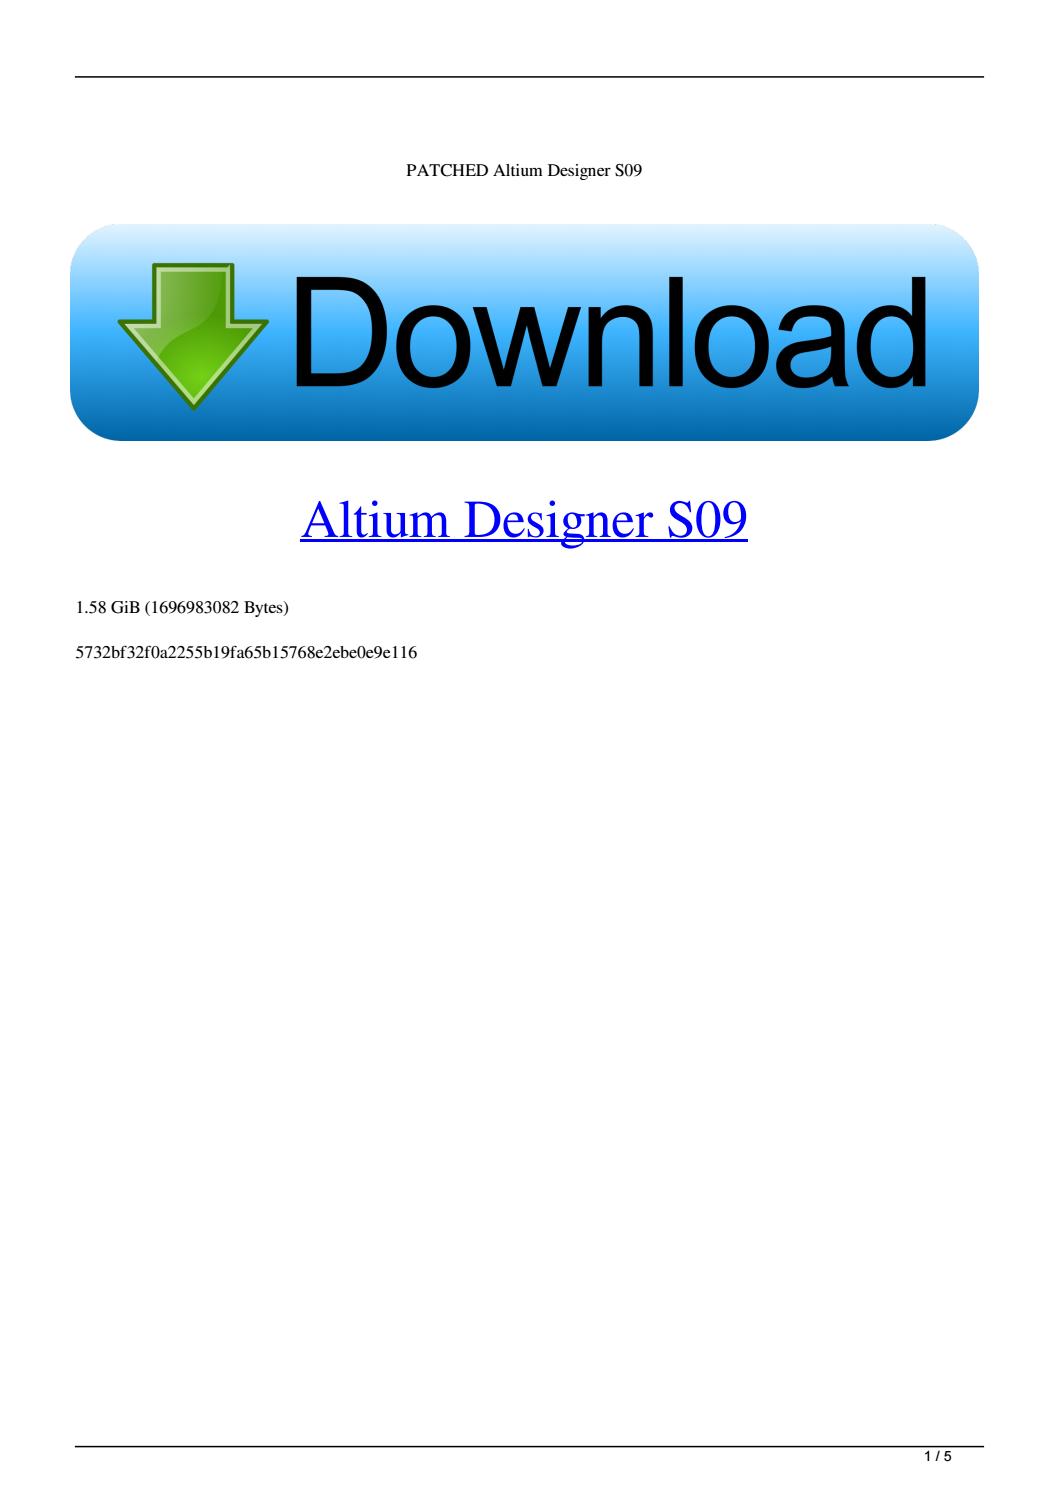 altium standalone license price